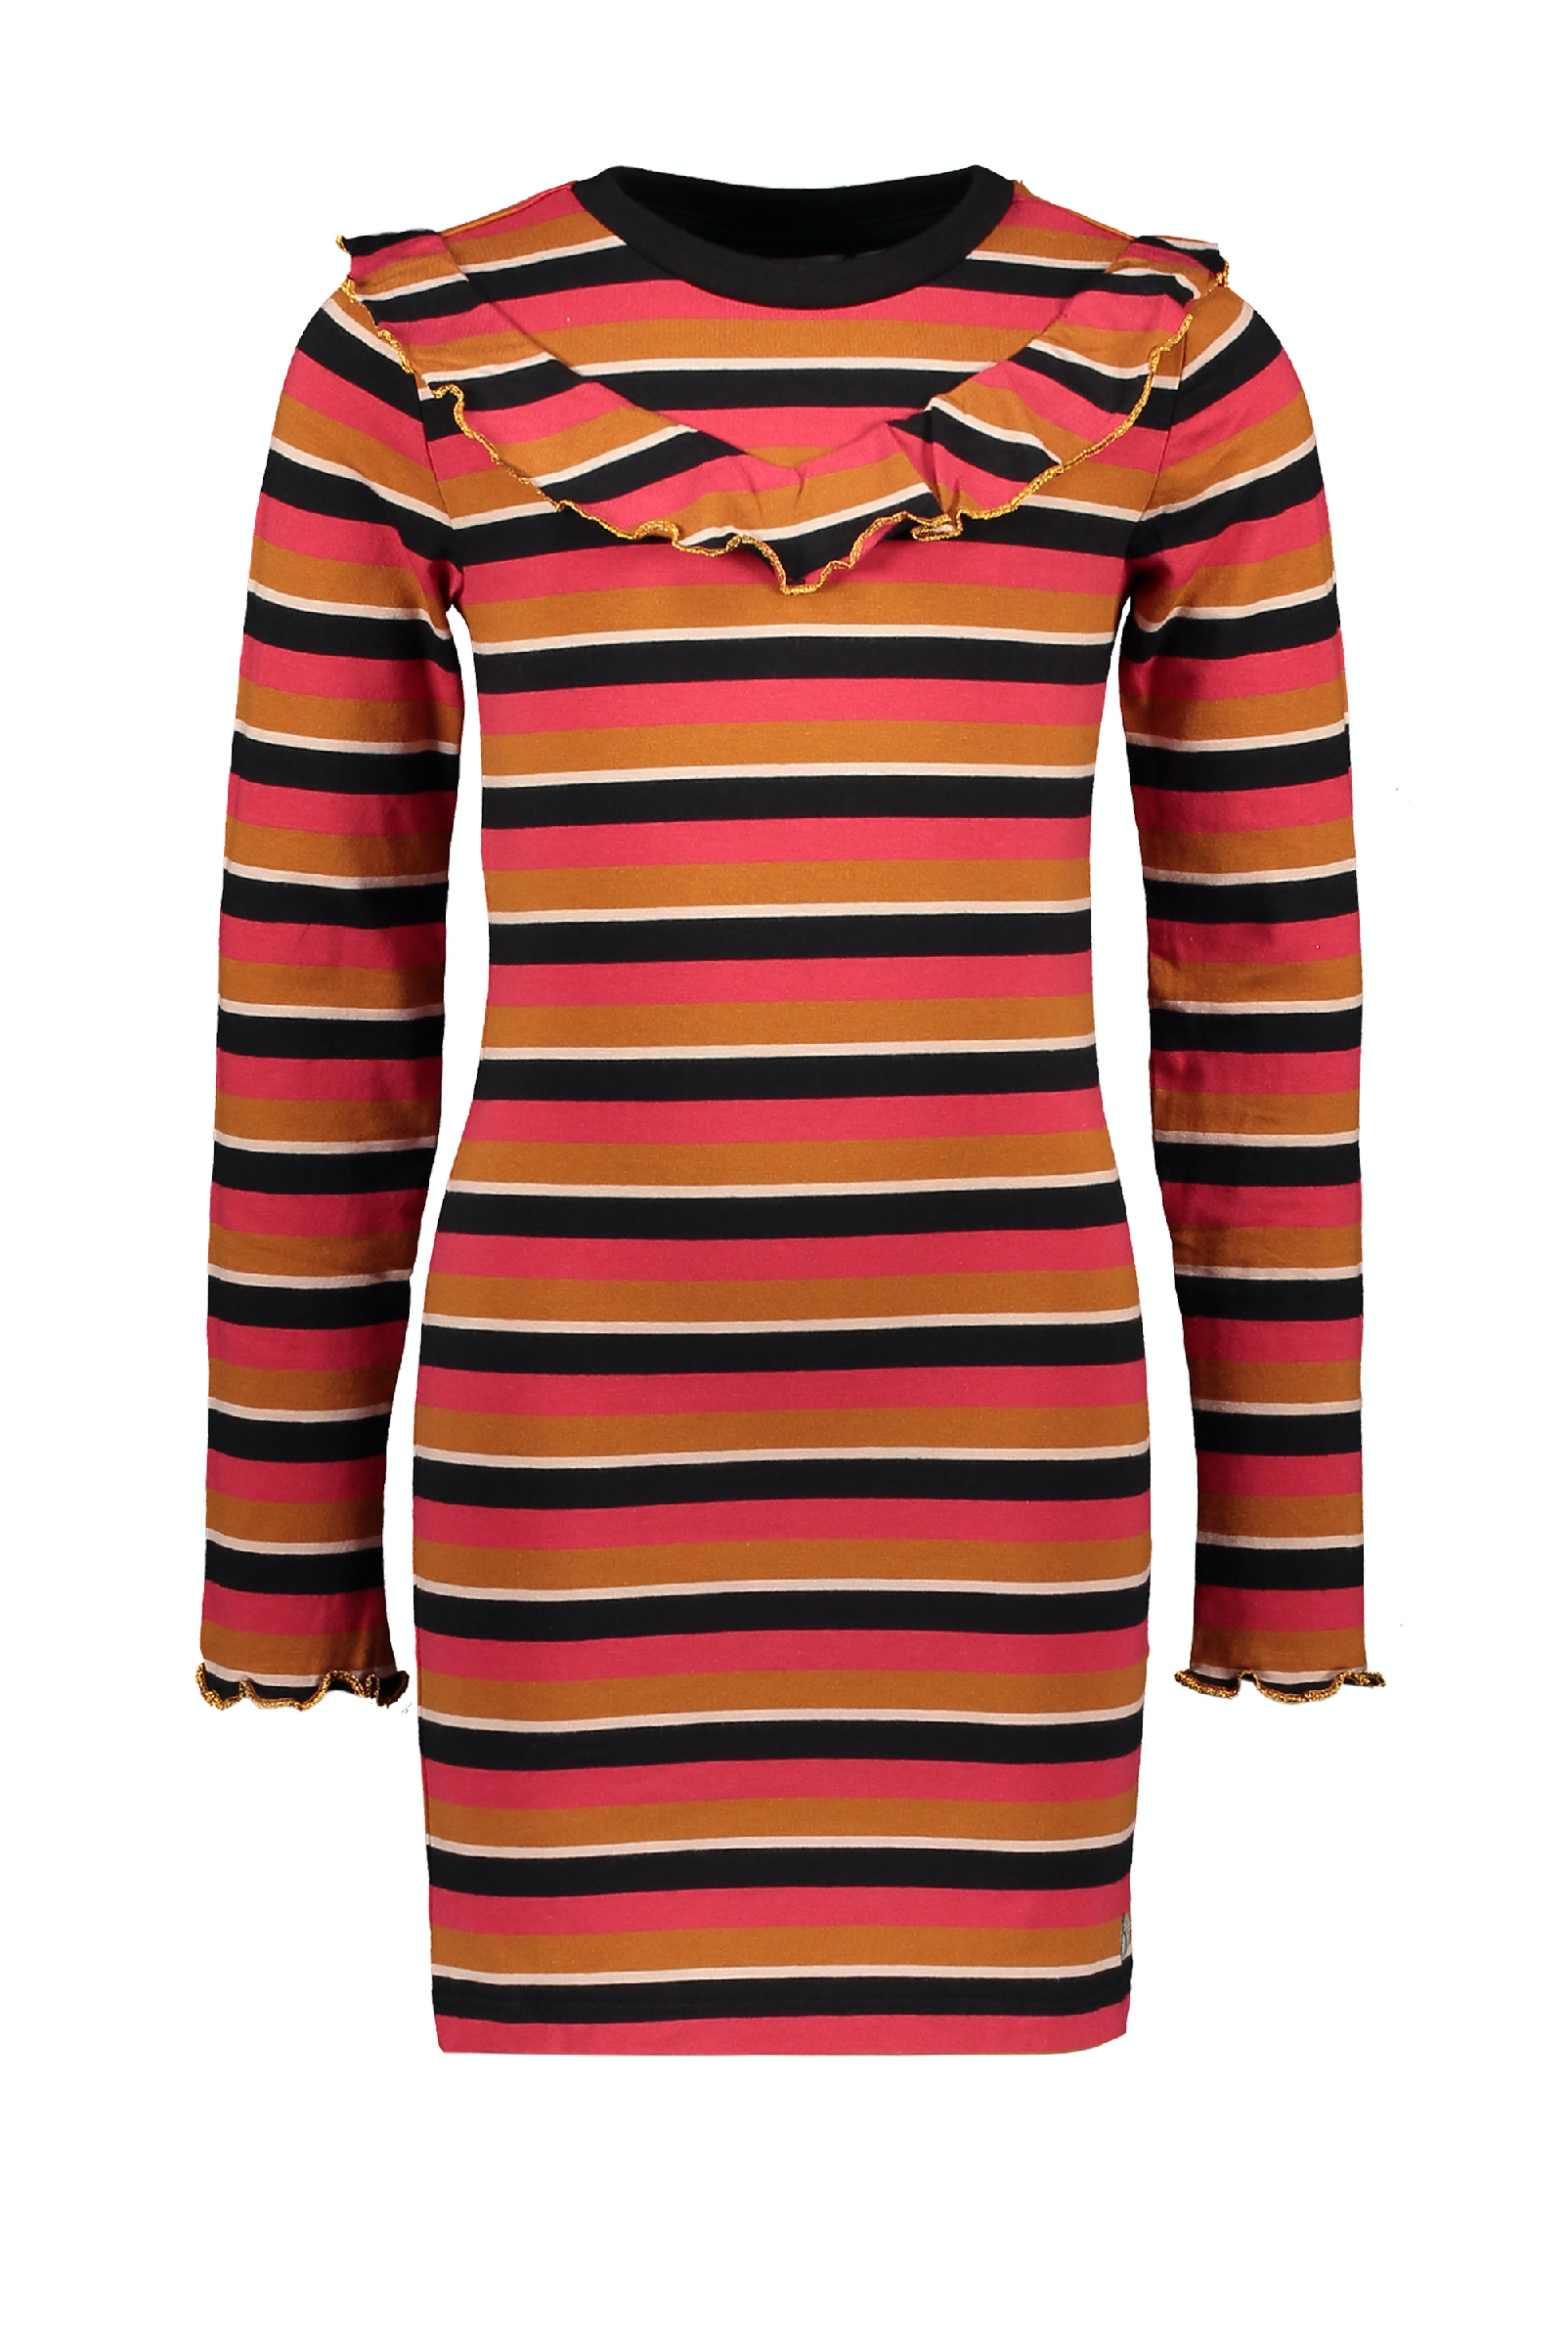 Moodstreet MT striped dress frills